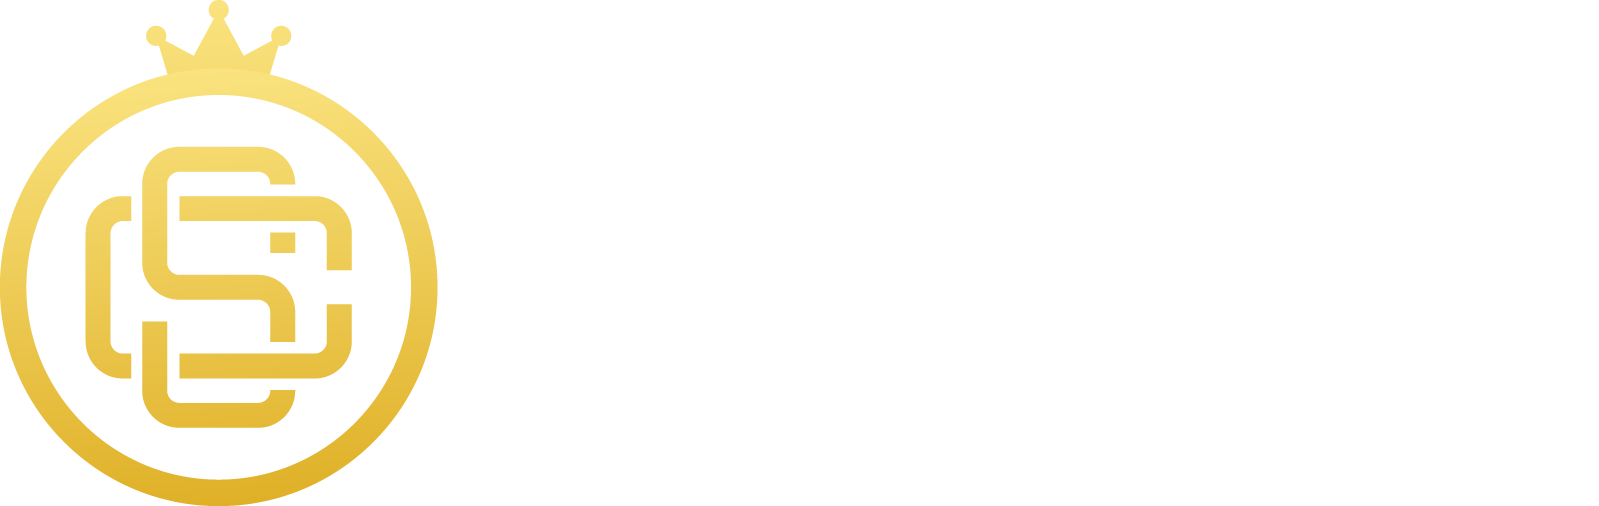 ocs8mas-site-logo